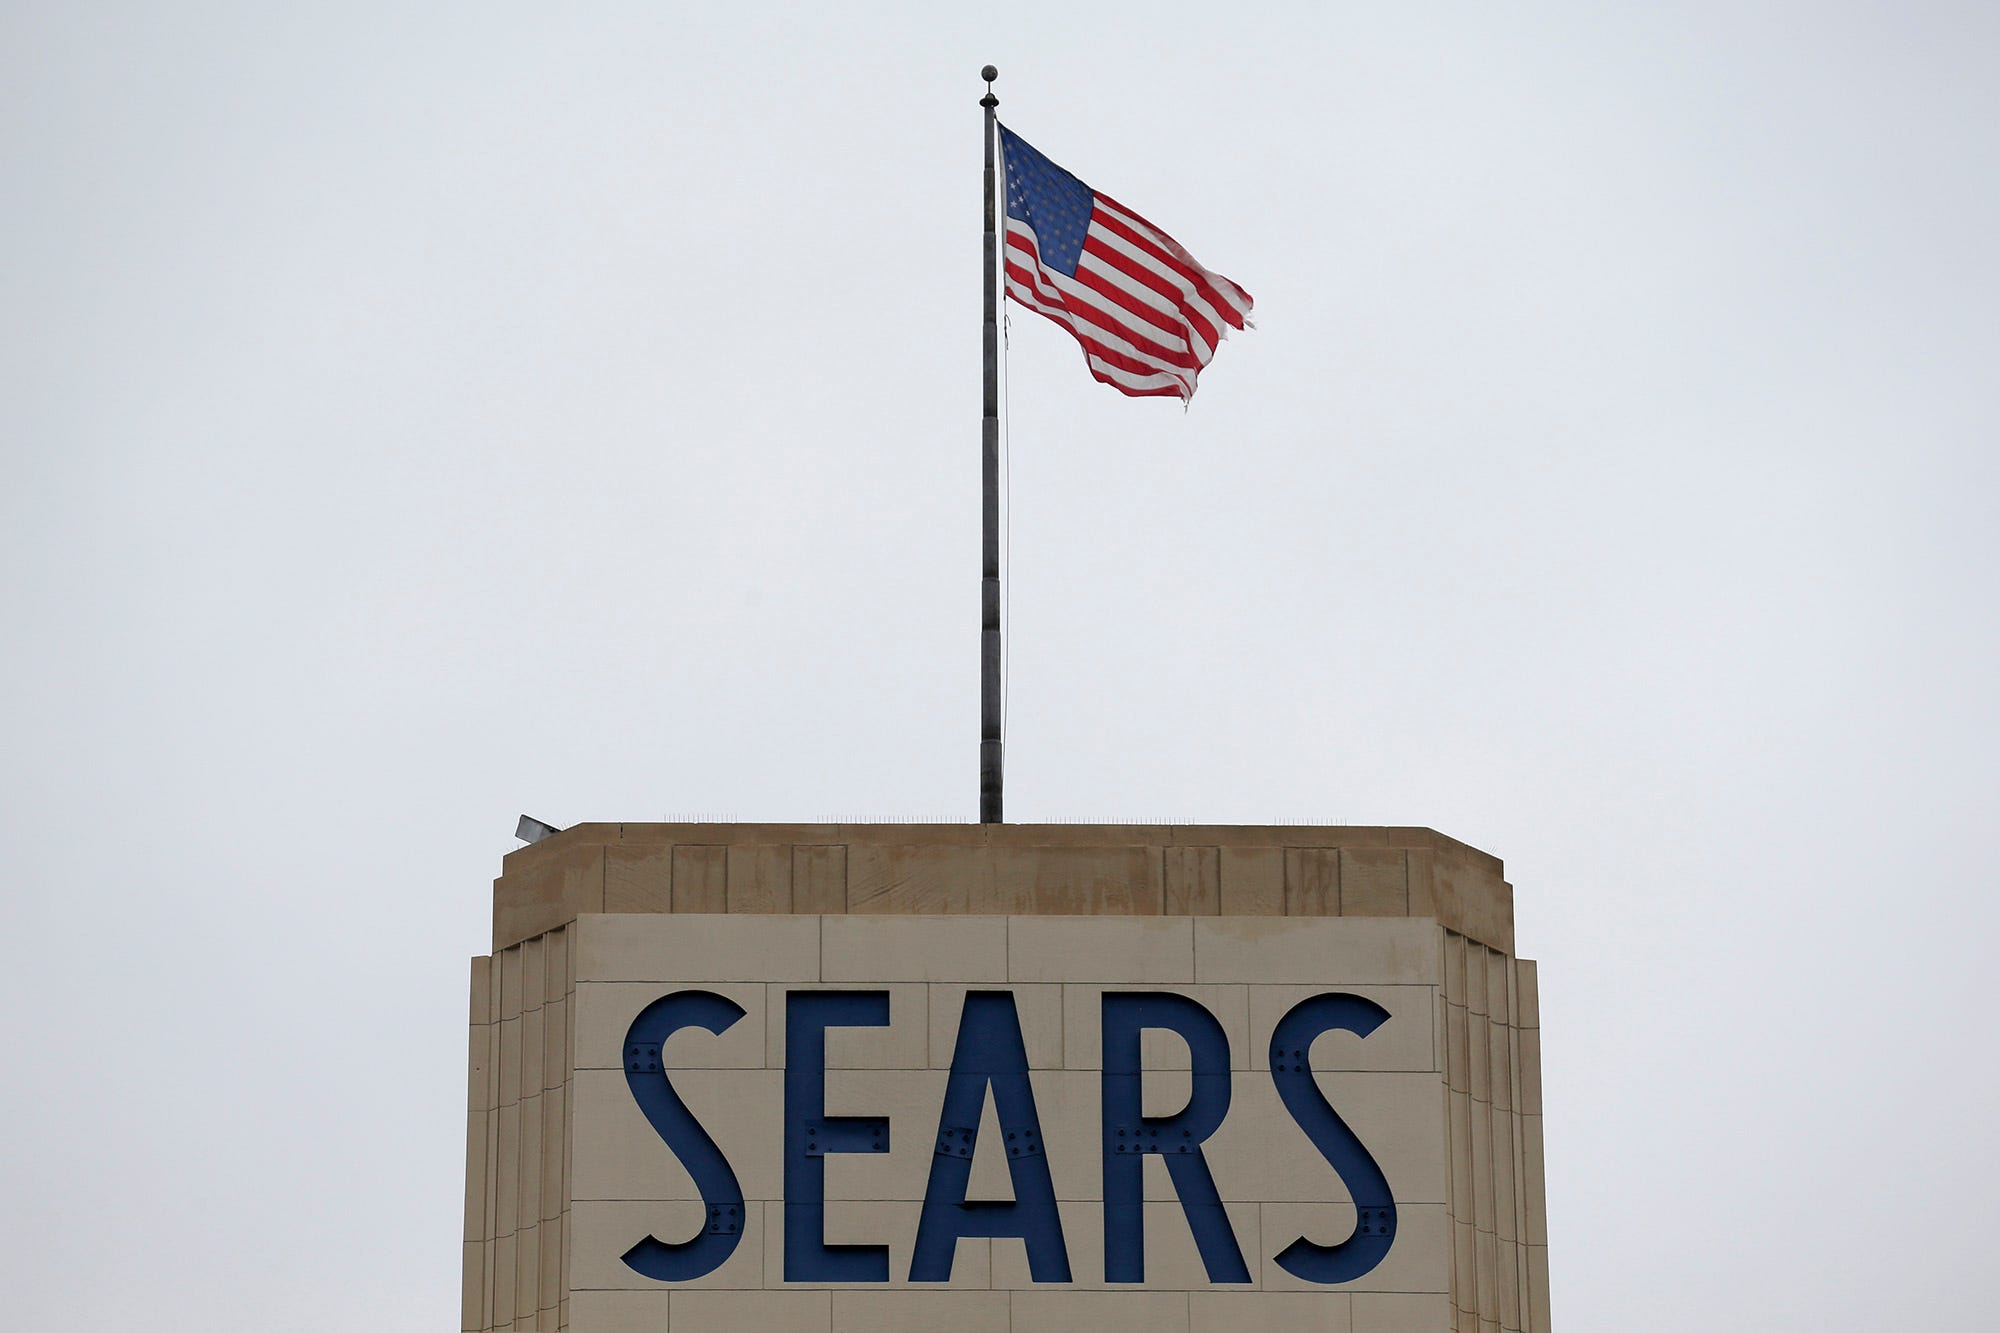 Sears Women S Size Chart